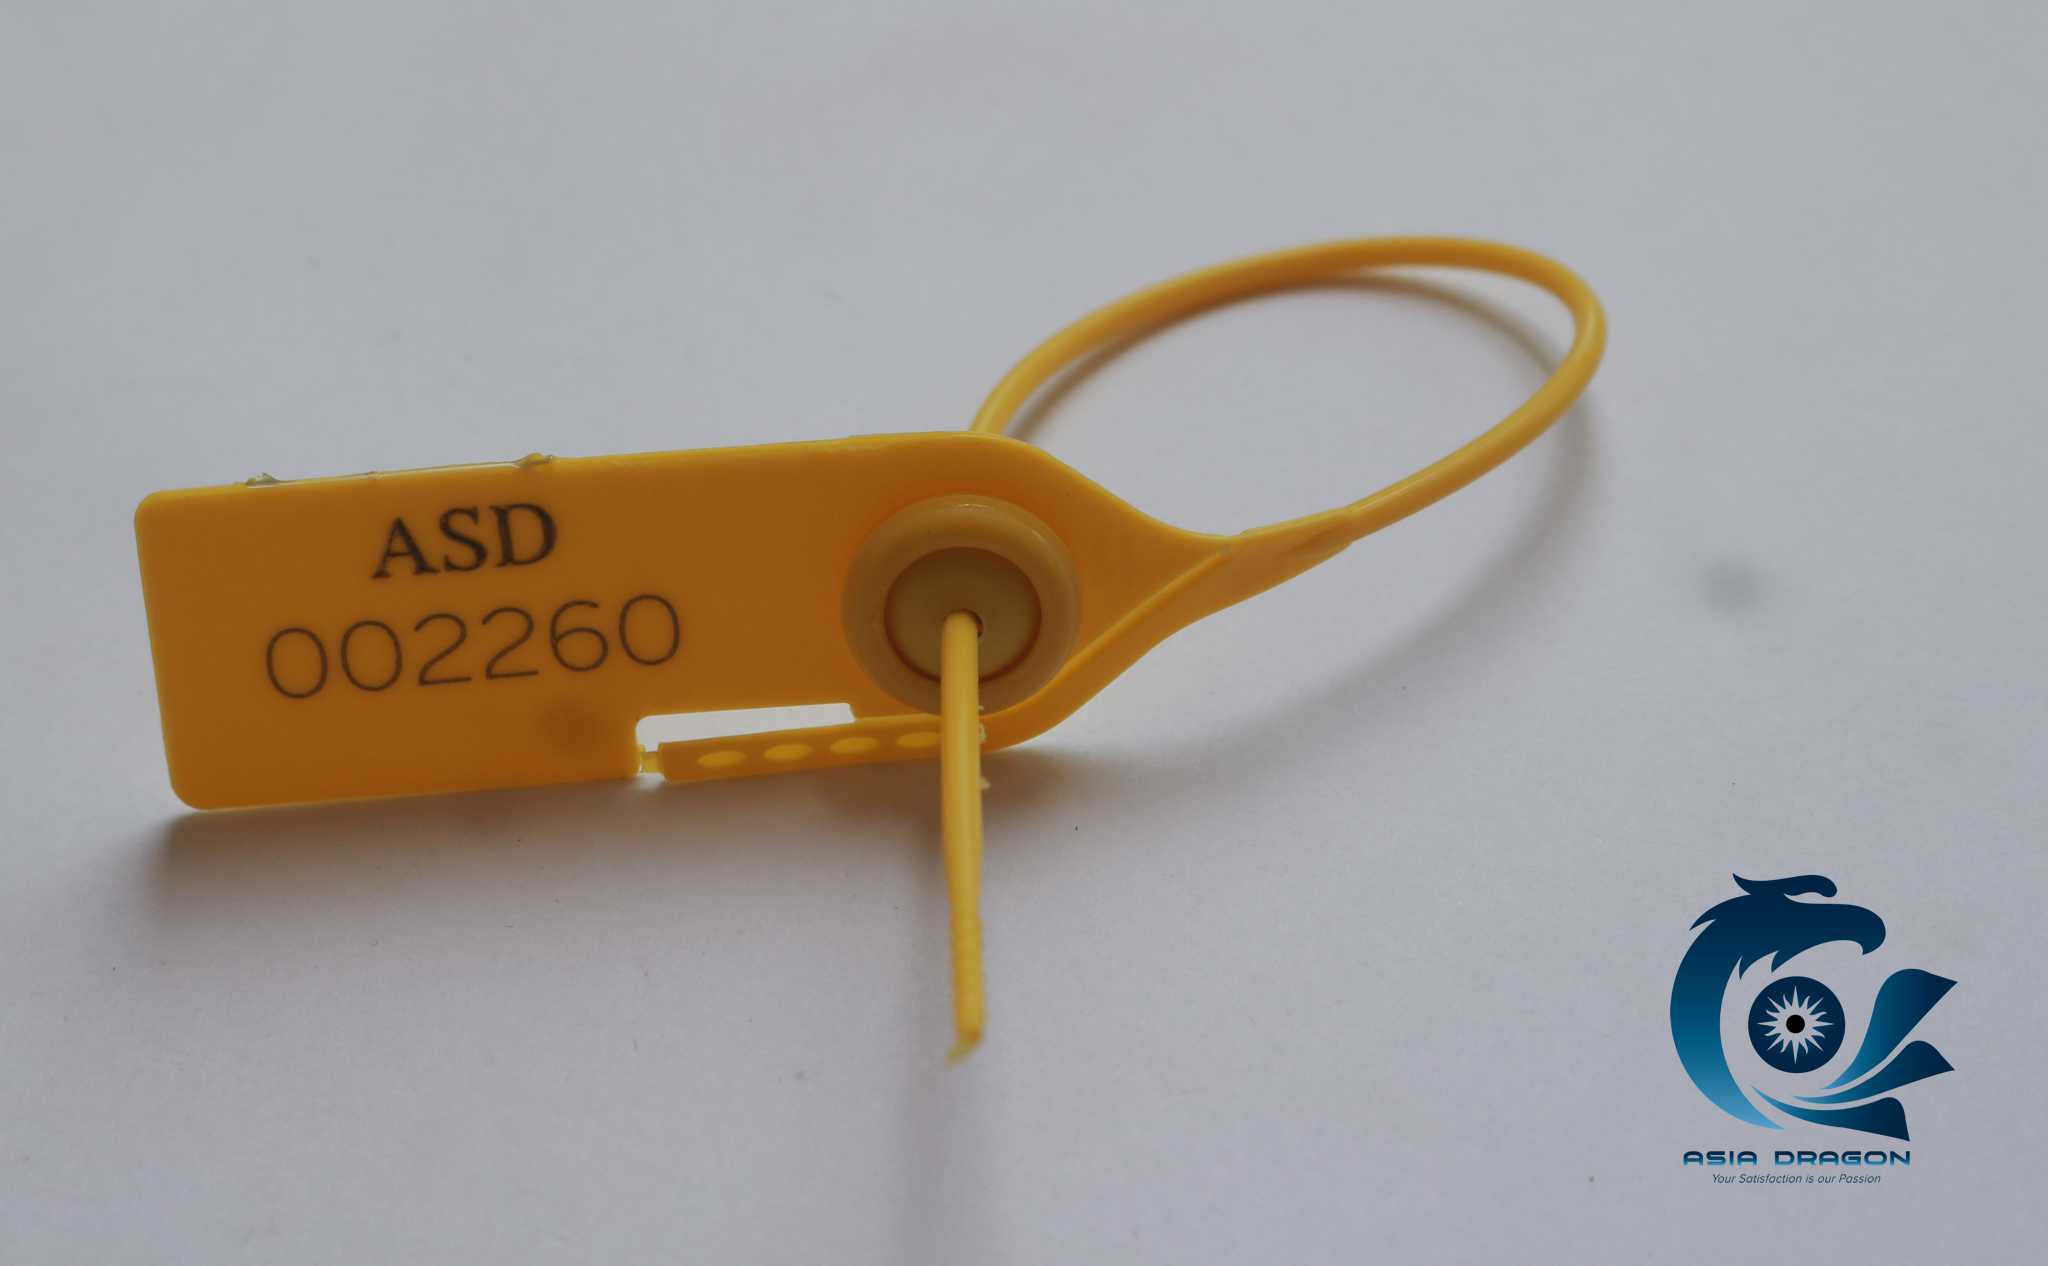 ASD016YL : Combo 300 chiếc dây / seal niêm phong tag quần áo, xe tải, cửa kho, xe...dài 23cm in sẵn số seri.